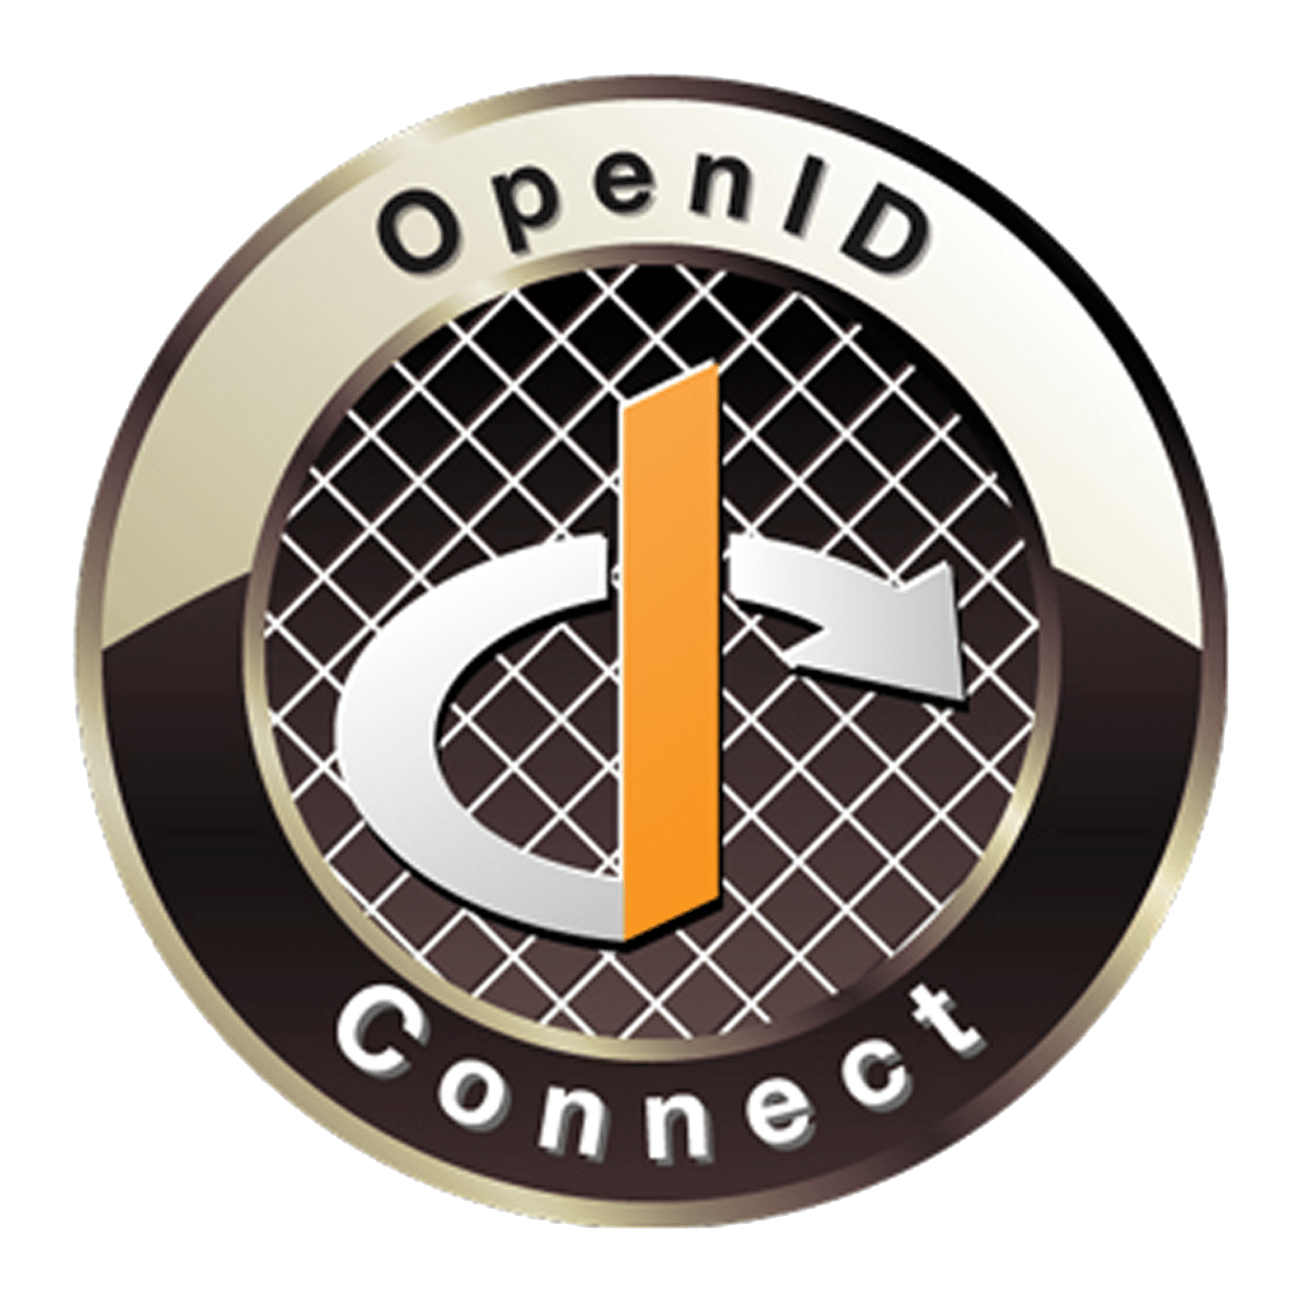 OpenID-Connect - Autorisierung und Authentifizierung von digitalen Identitäten